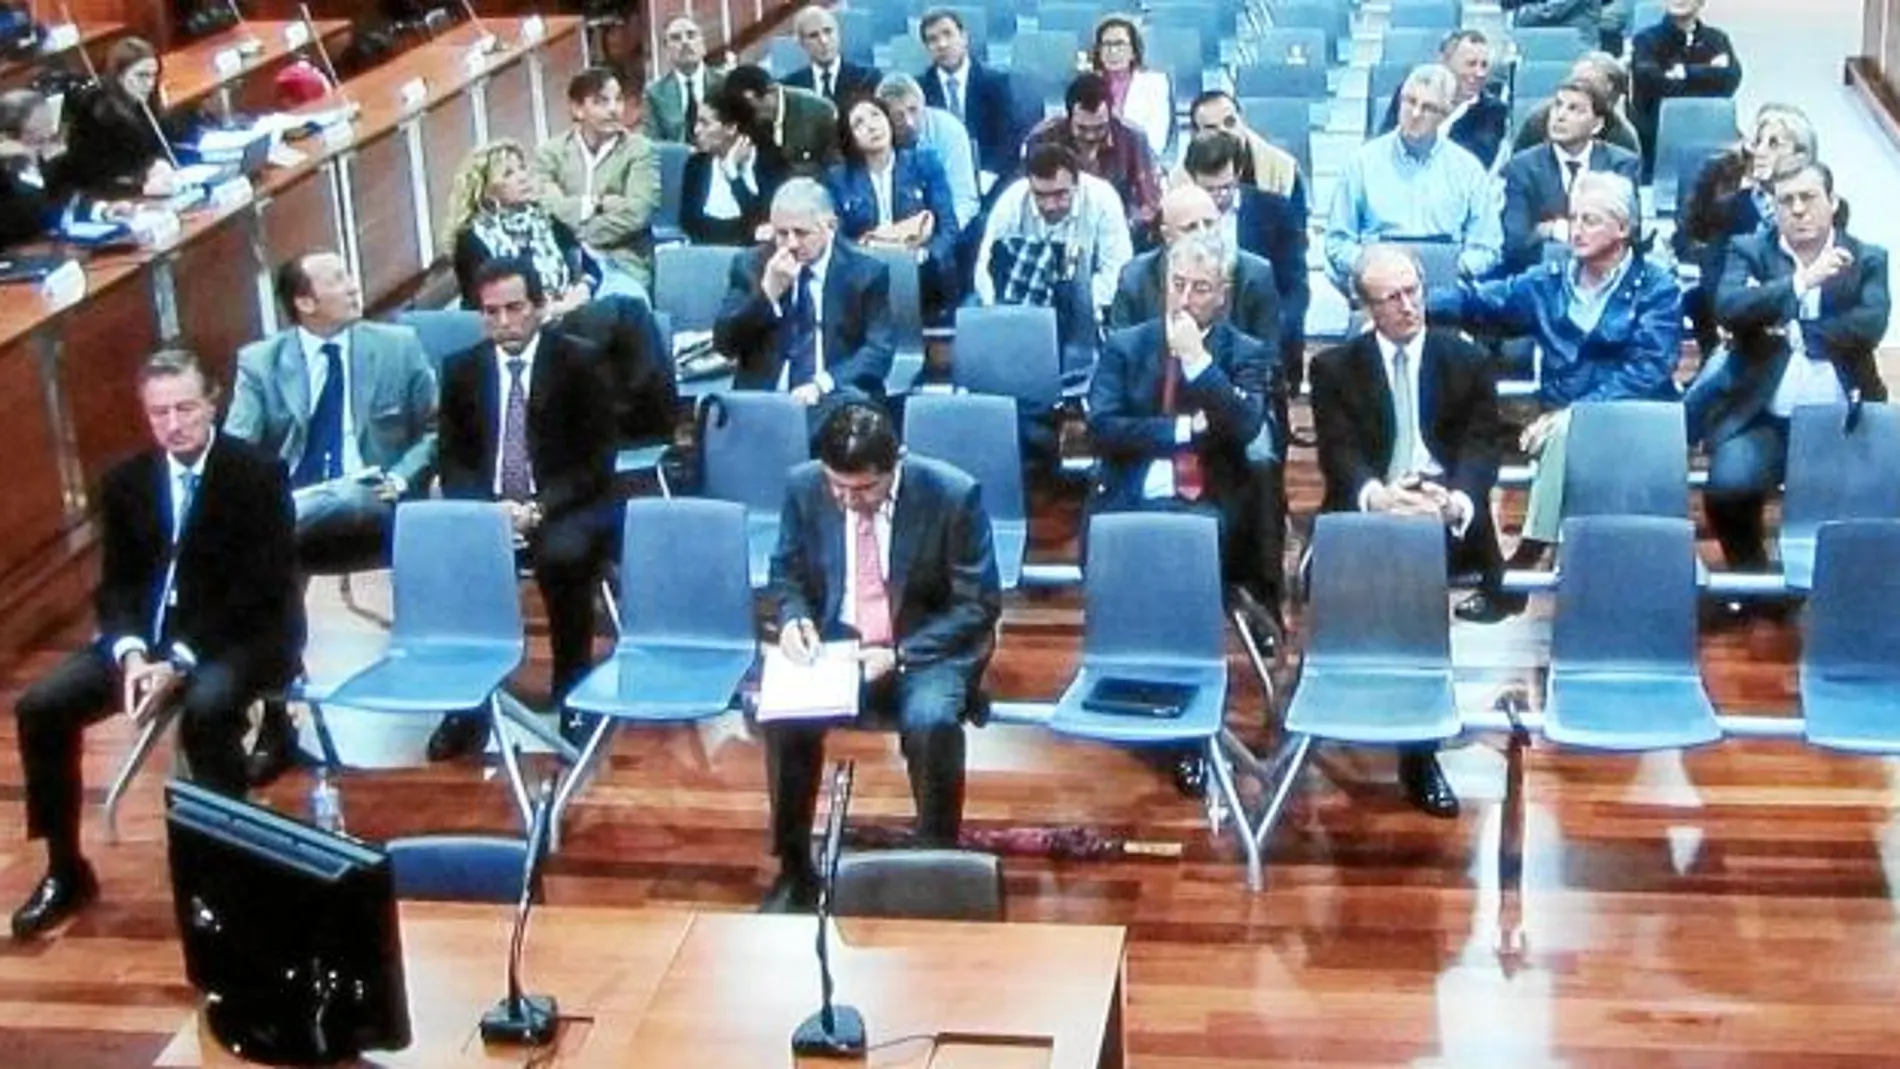 La sesión de ayer en la Audiencia provincial malagueña fue la número cien de este macroprocedimiento judicial